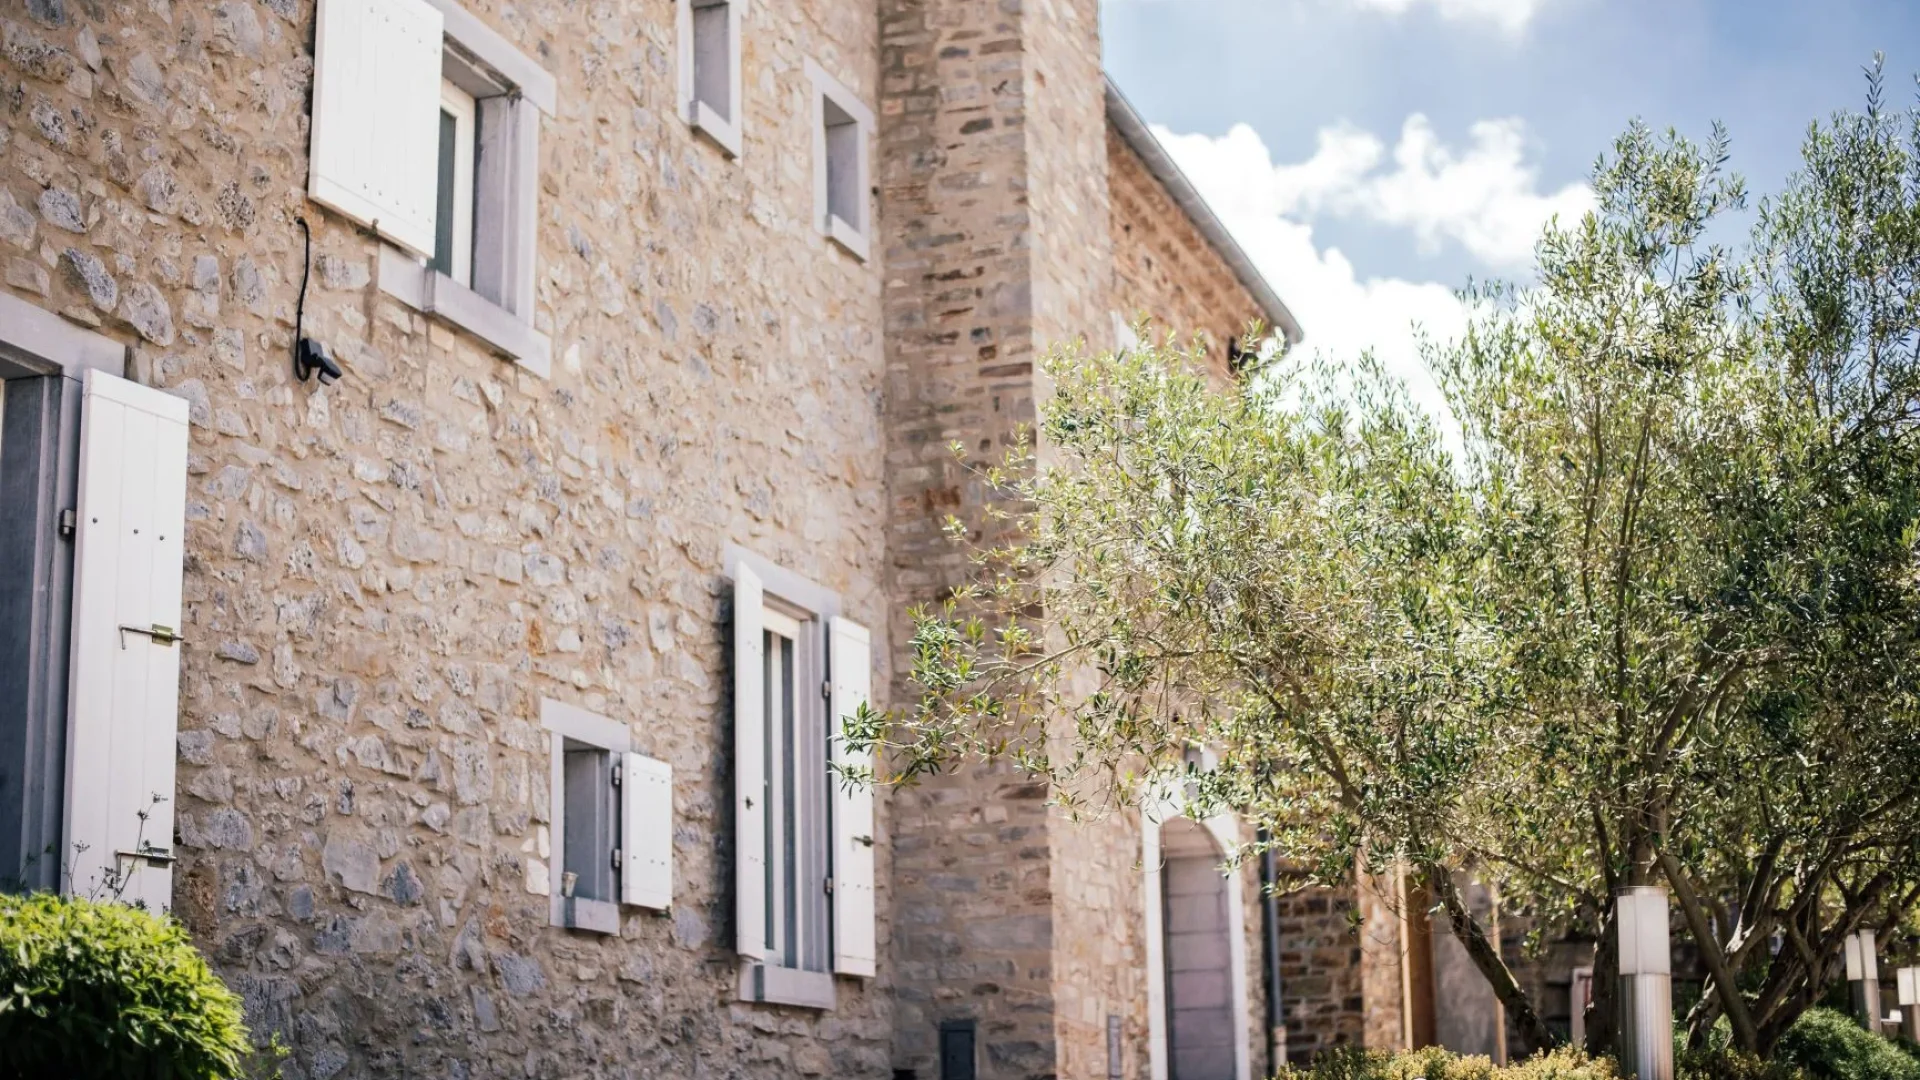 Locations de vacances, maisons autour de Carcassonne